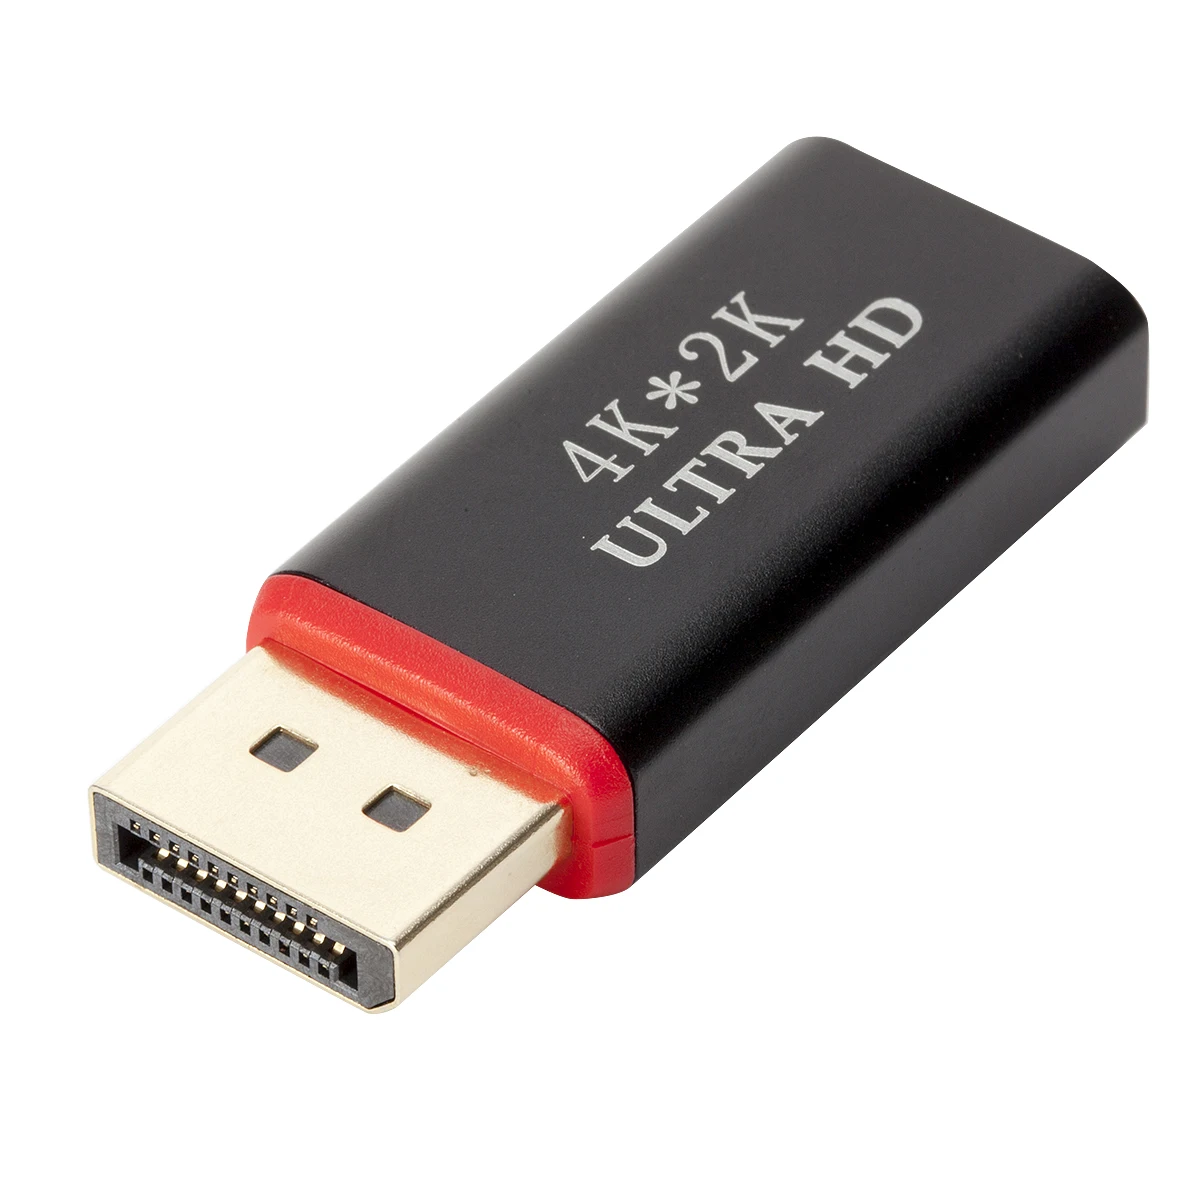 Kebidu 4K Ultra HD 3D позолоченный Дисплей порт к HDMI конвертер DP Мужской к HDMI Женский адаптер 4K* 2K 30Hz для HDTV PC